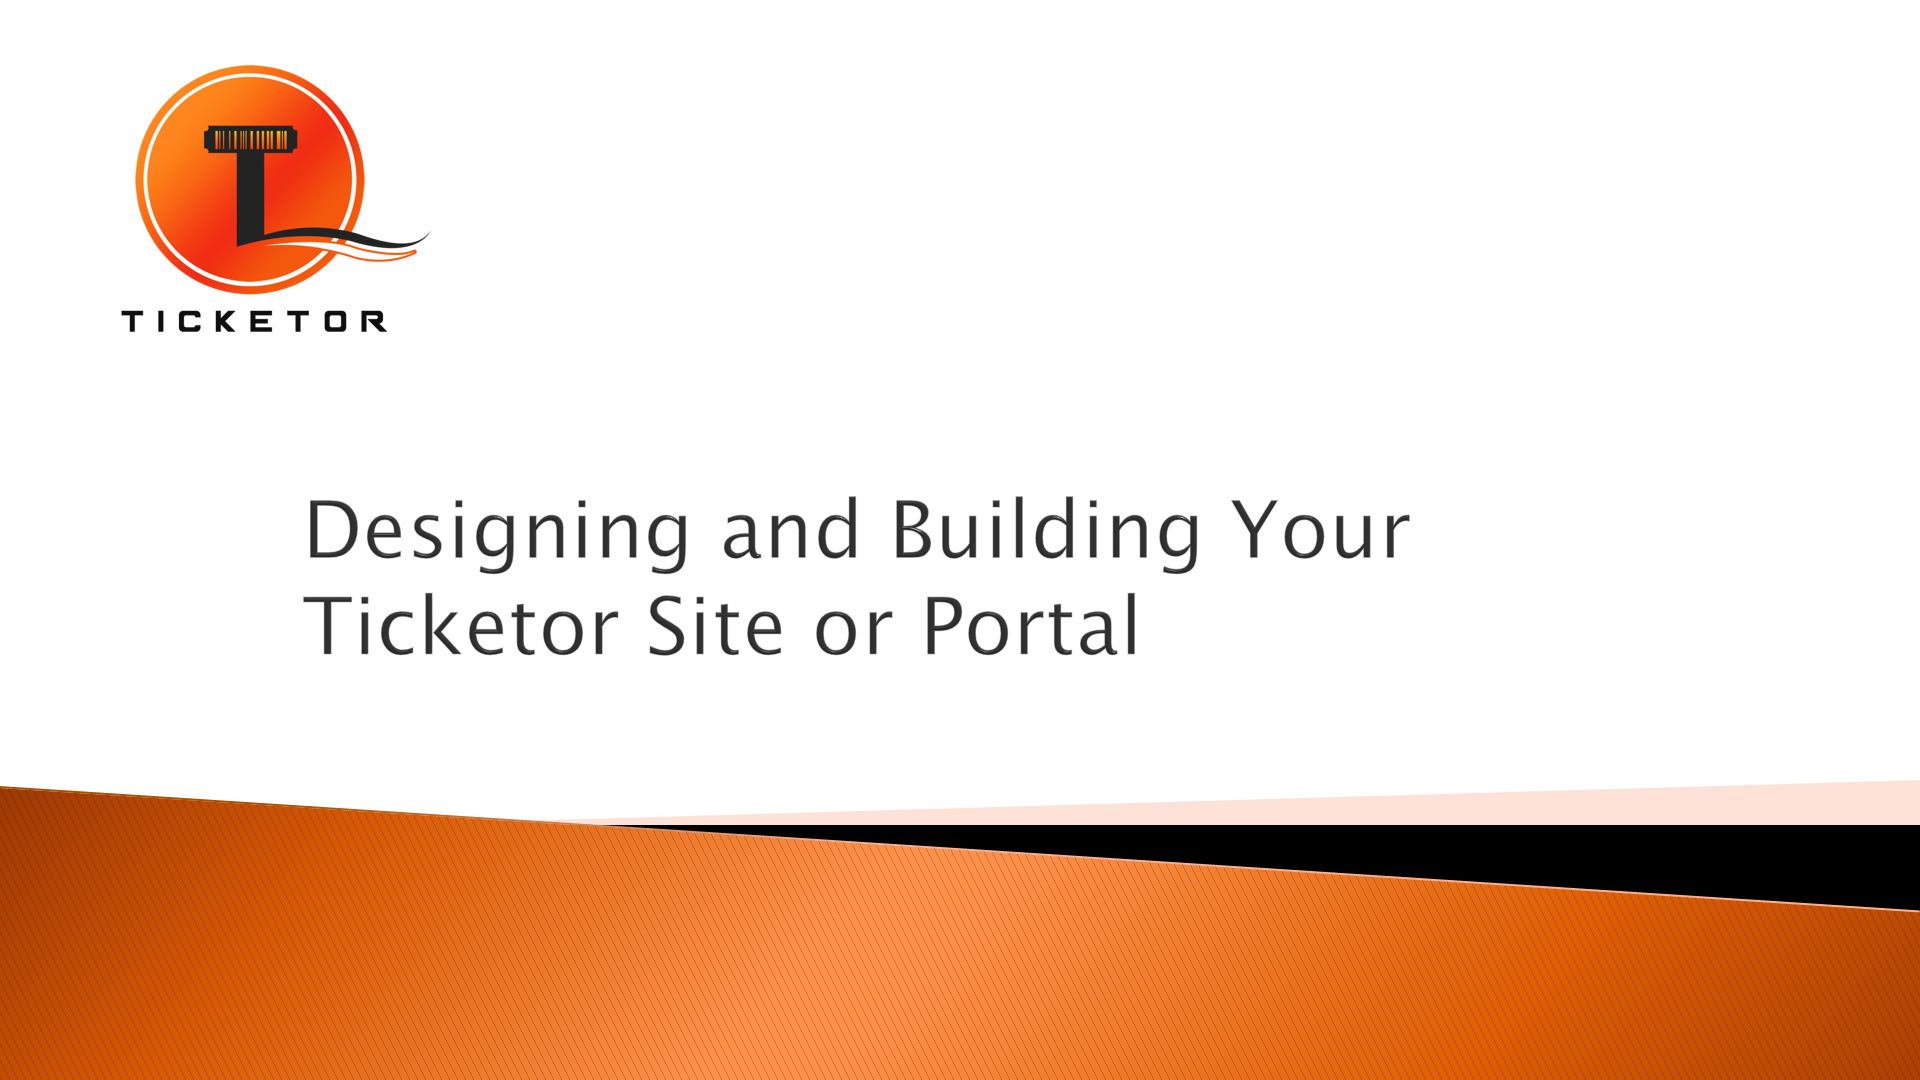 Diseño y construcción de su sitio o portal de Ticketor o integración con su sitio